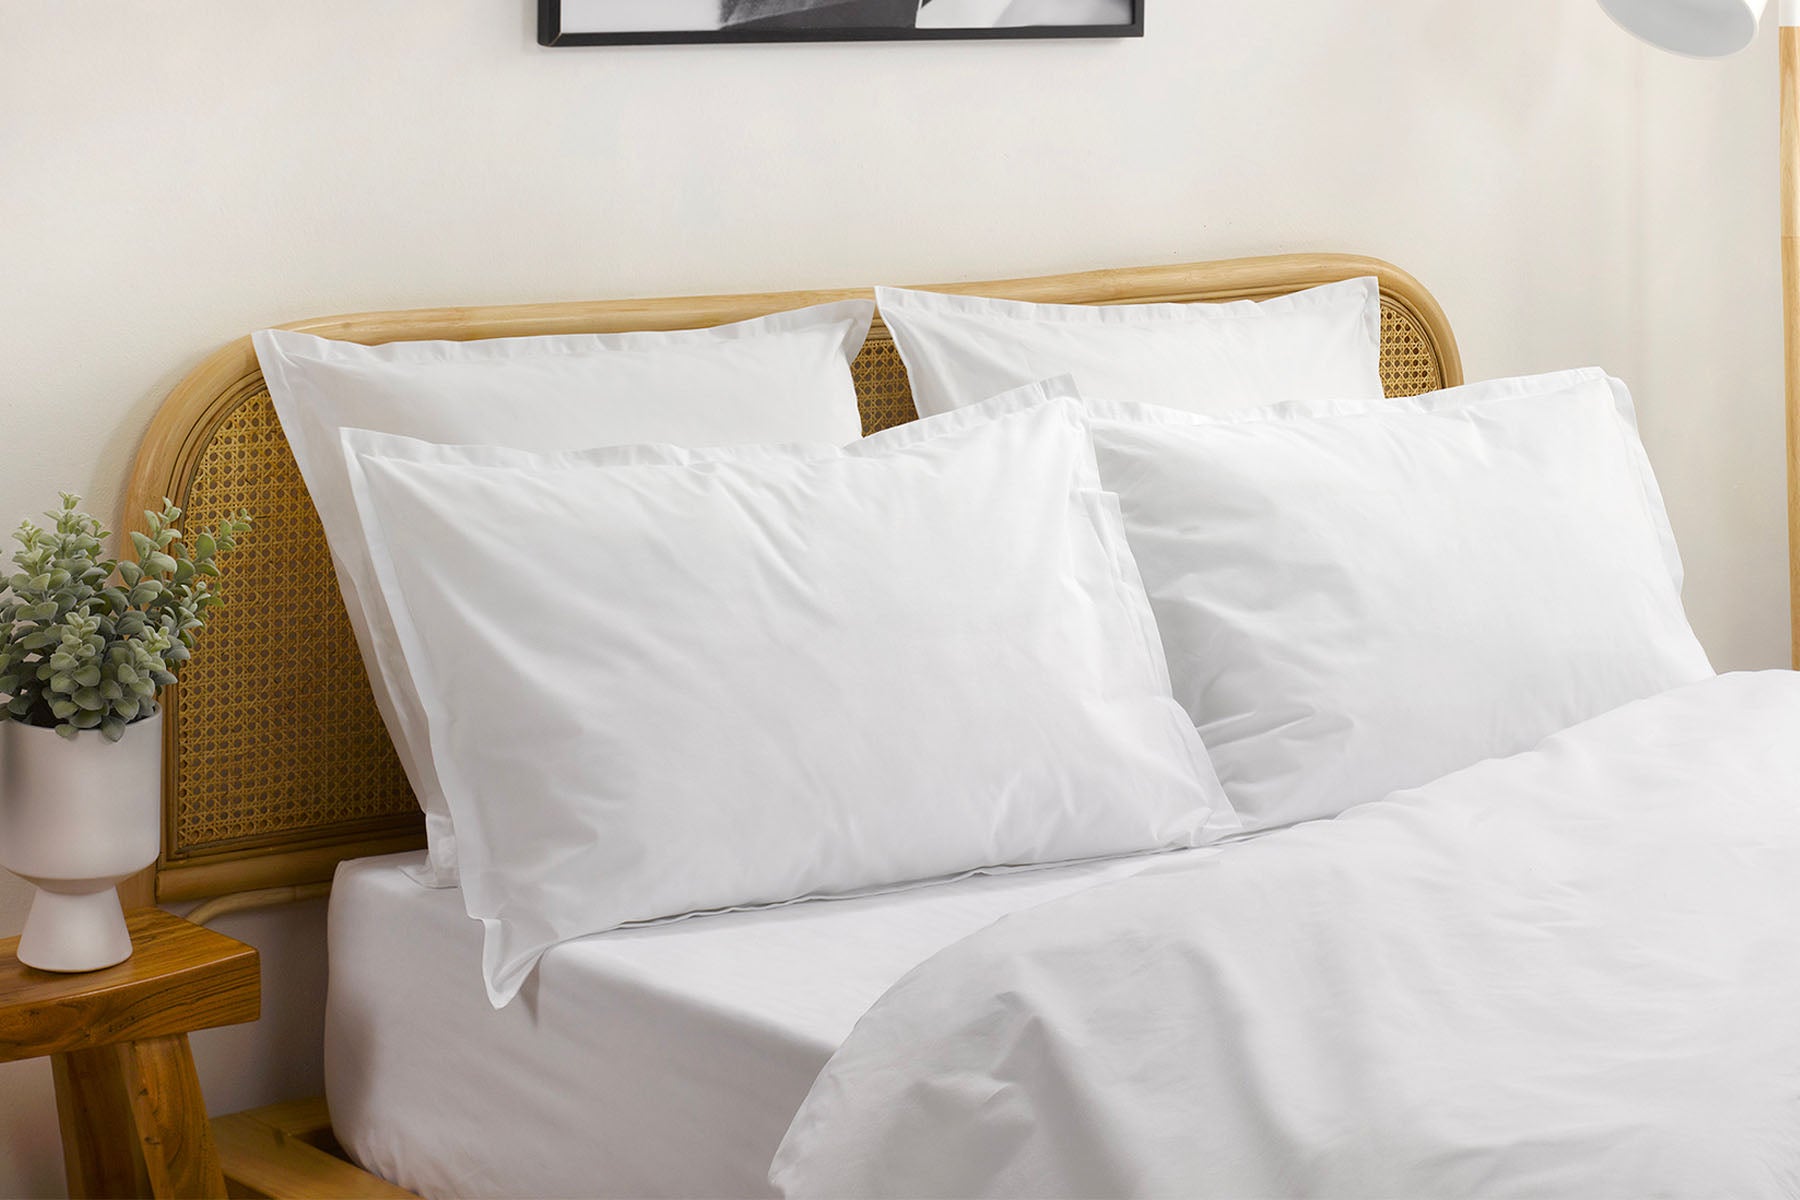 Linge de lit haut de gamme - qualité hôtelière